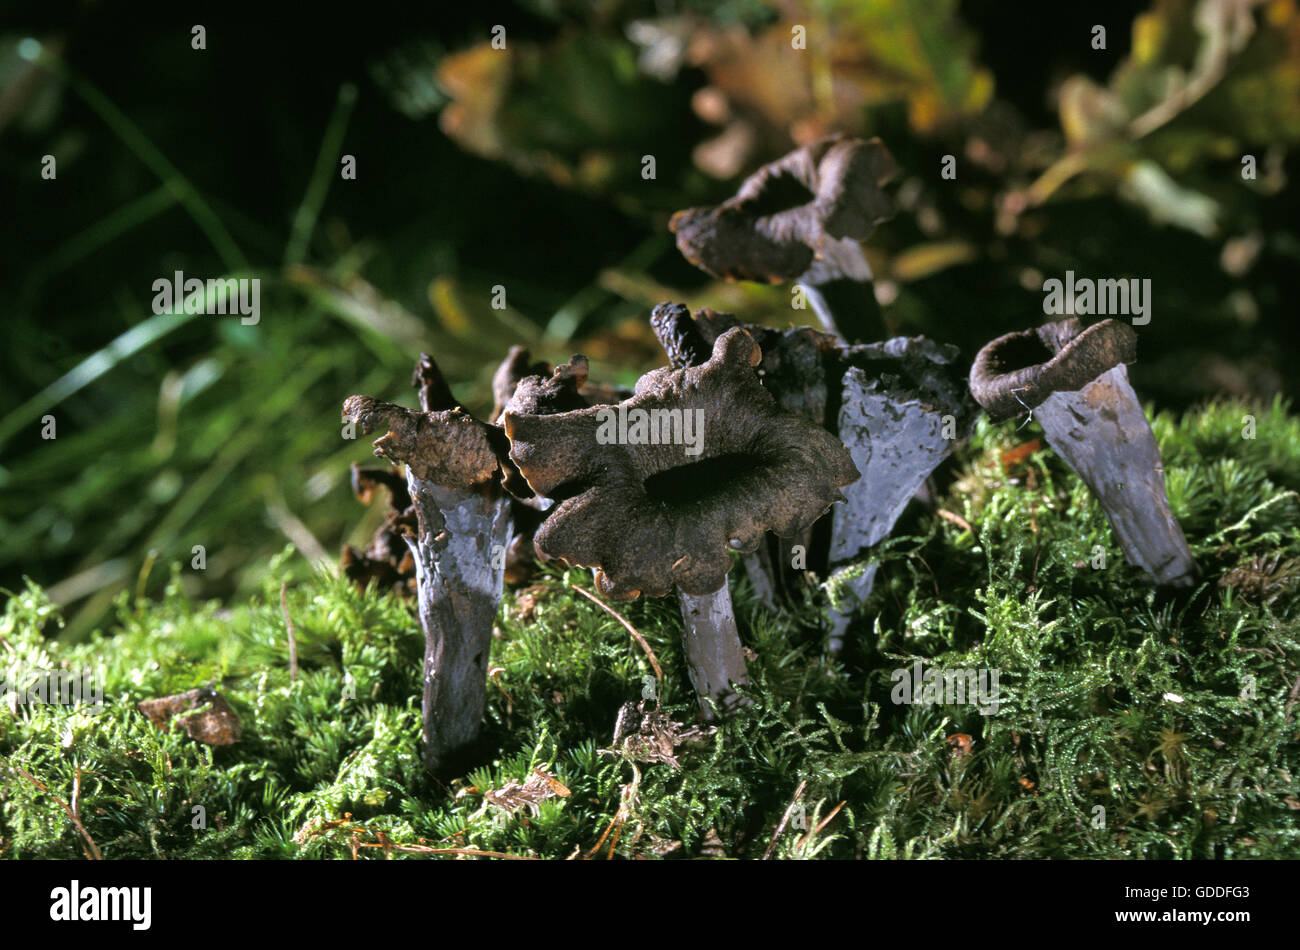 Horn of Plenty Mushroom, craterellus cornucopioides, Edible Mushrooms Stock Photo